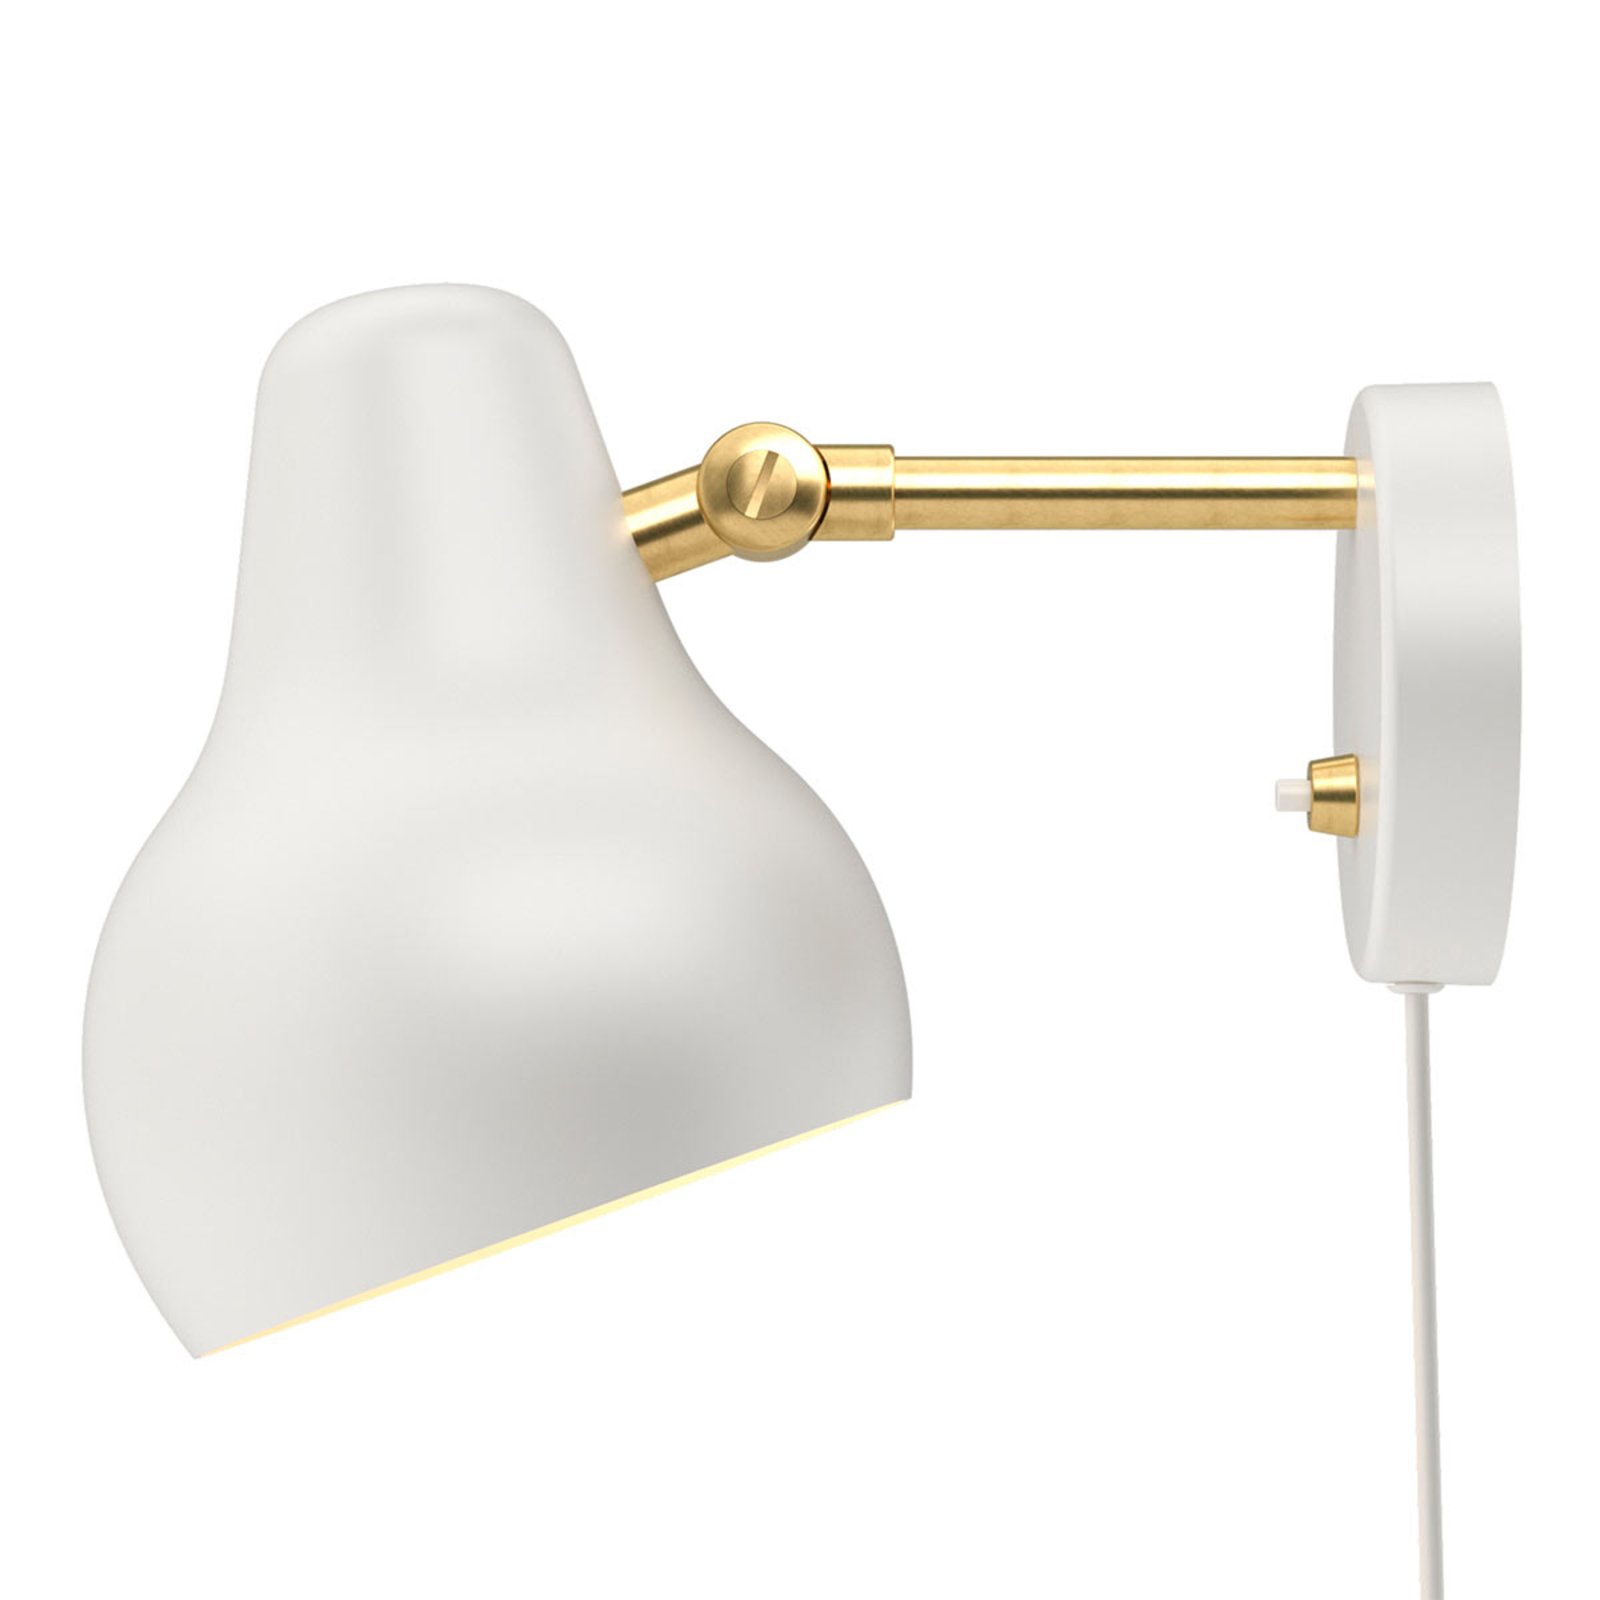 Дизайнерска LED лампа за стена Louis Poulsen VL38, бяла